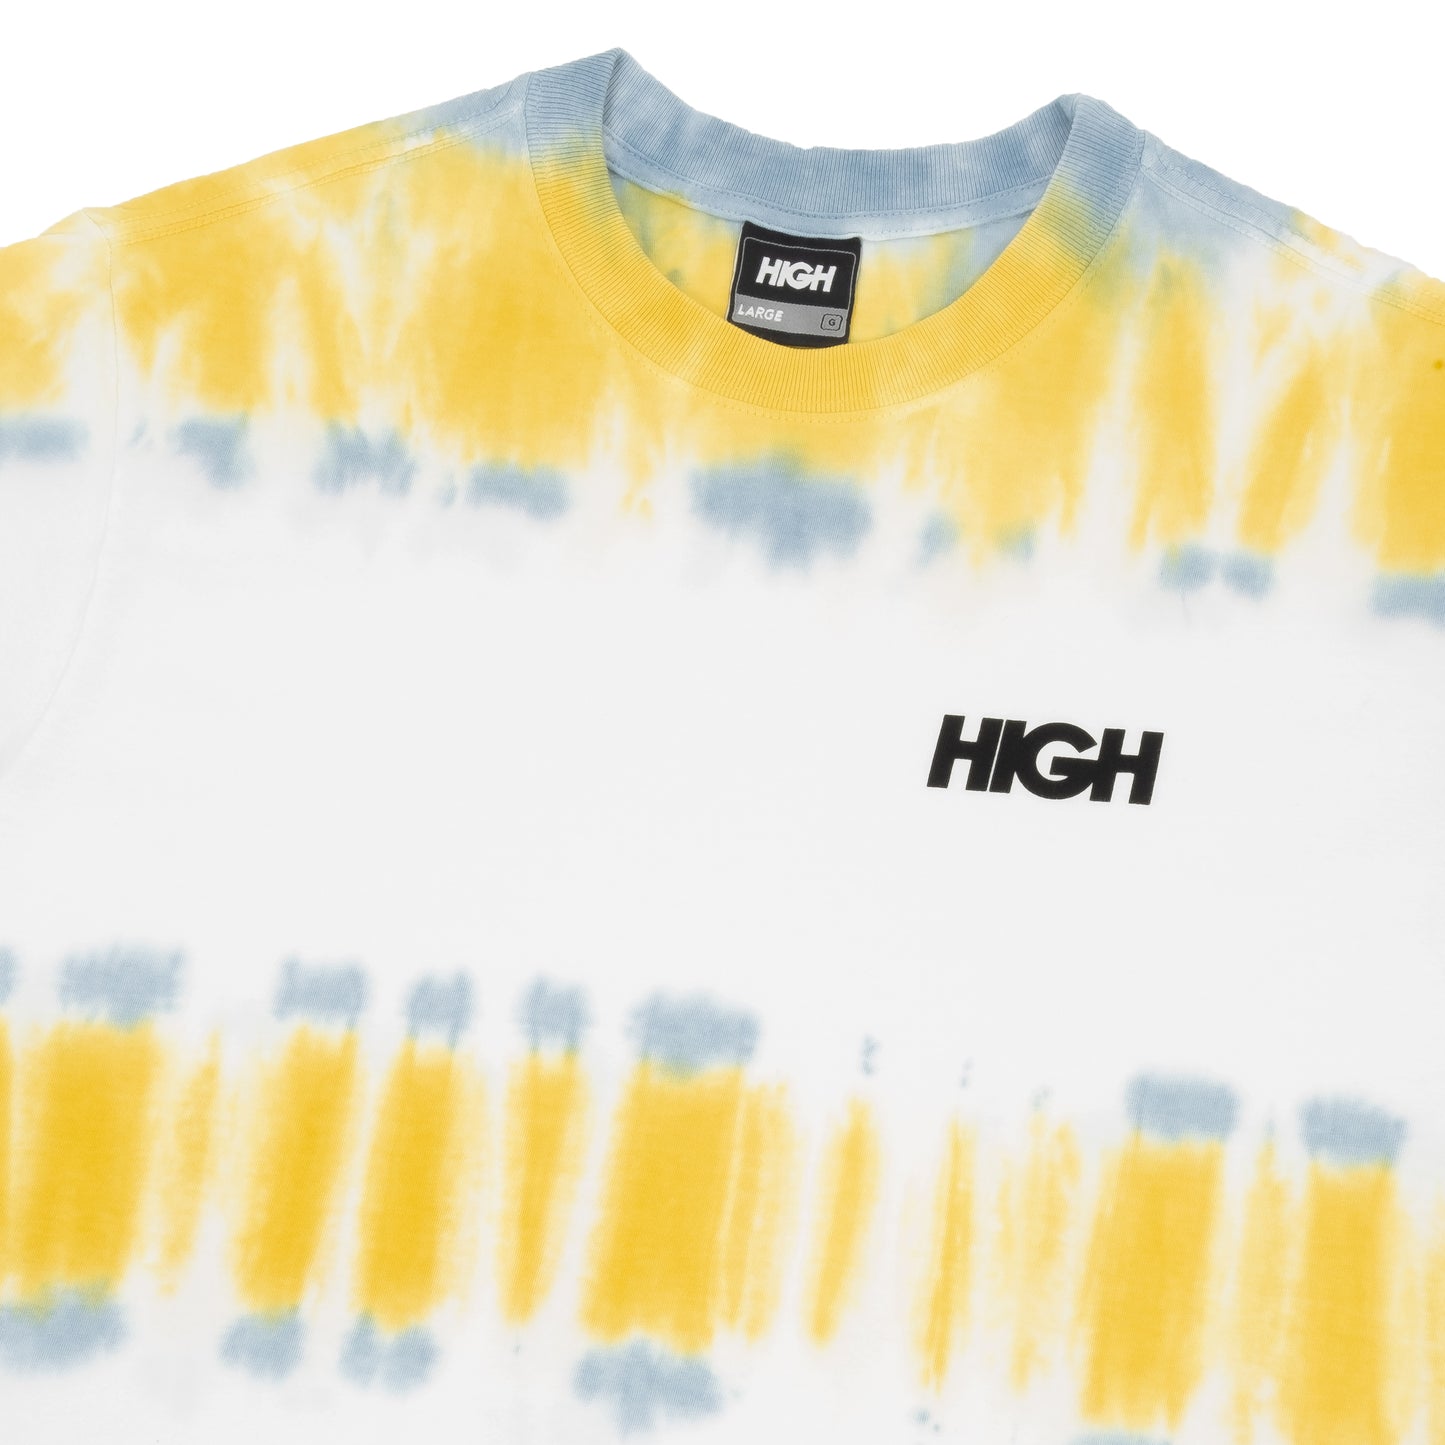 HIGH - Camiseta Kidz Dyed White